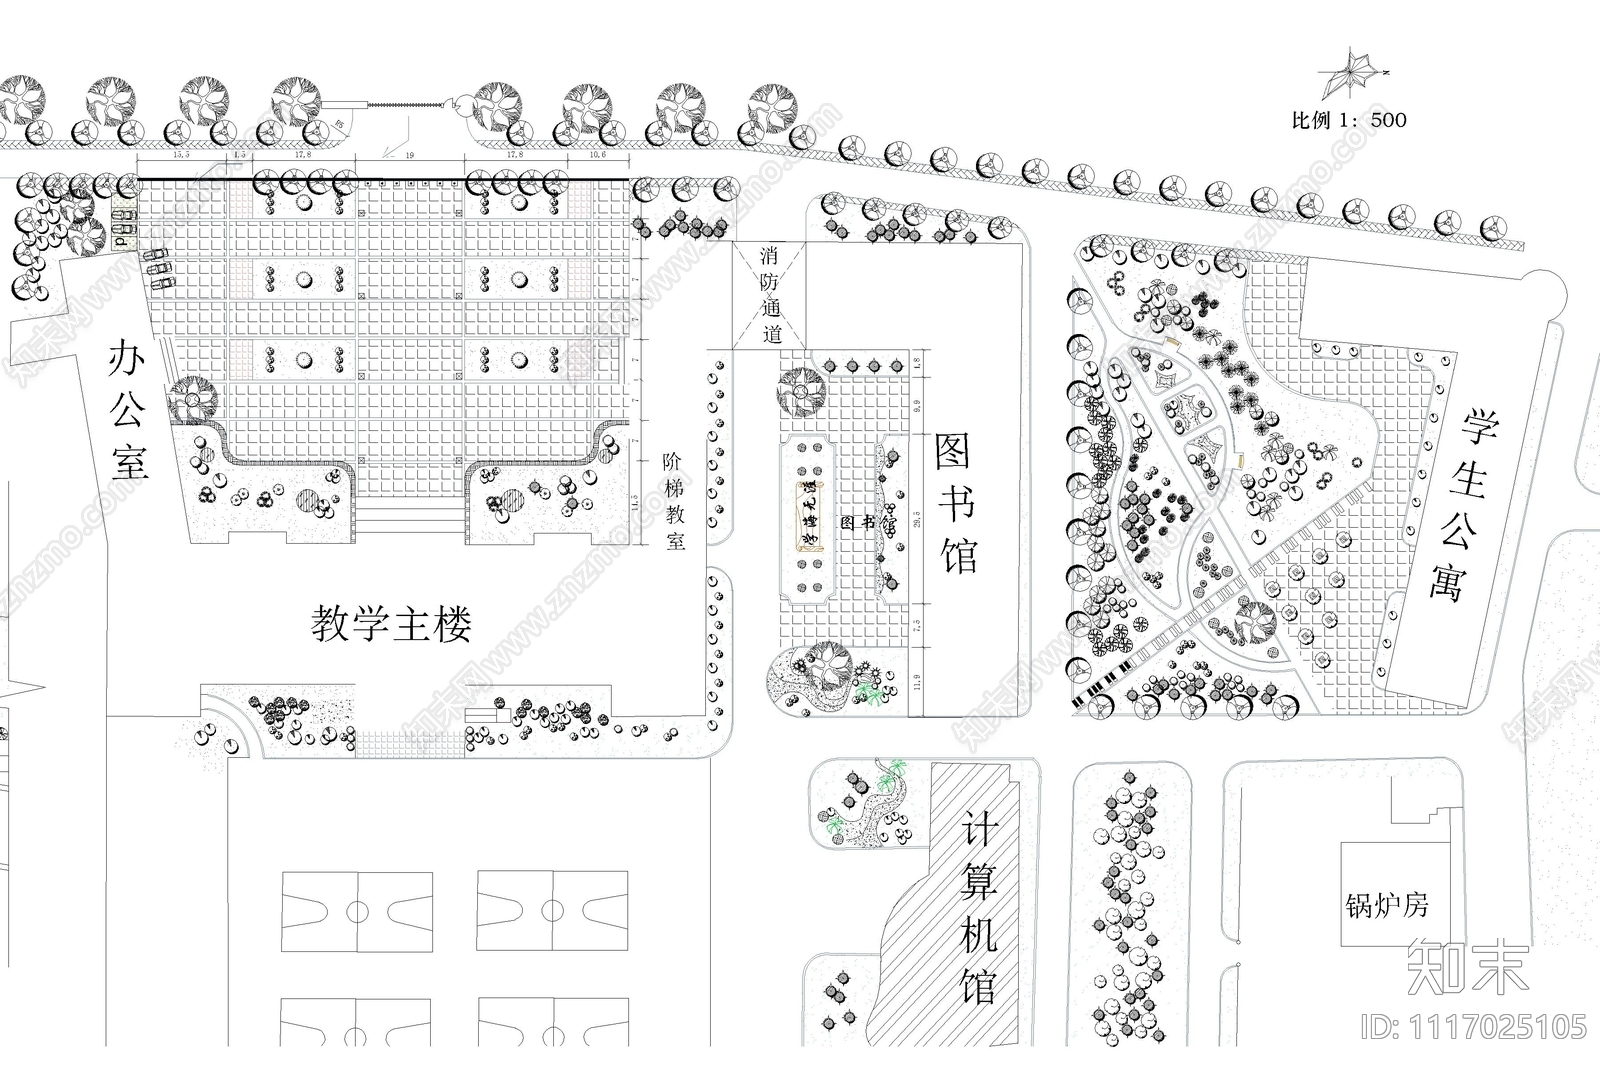 校园广场绿化设计平面图施工图施工图下载【ID:1117025105】